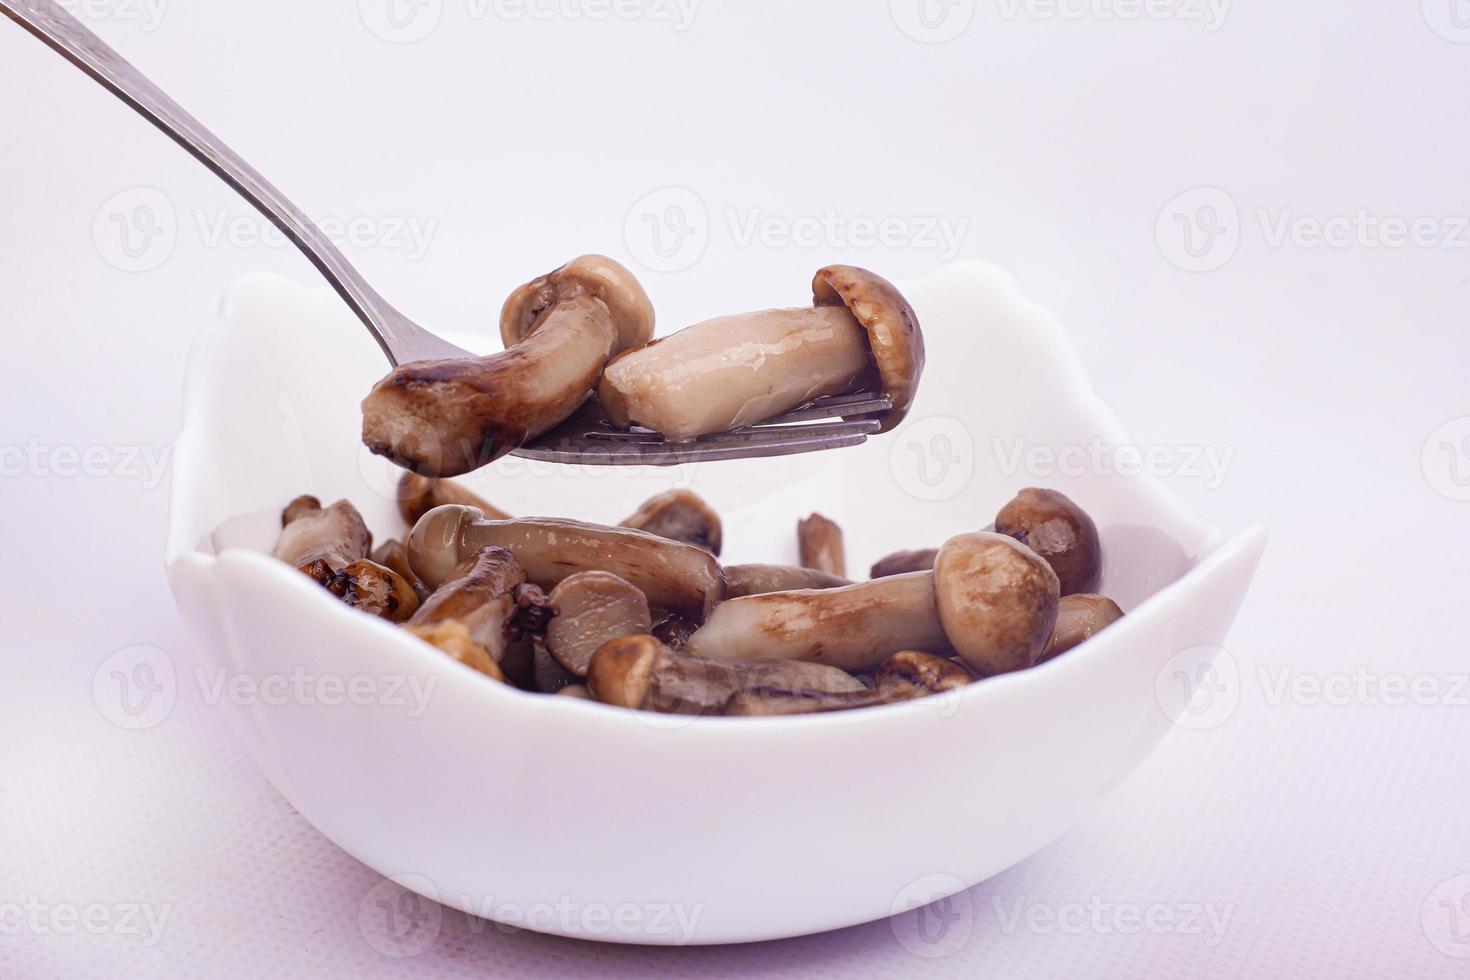 pequenos cogumelos em conserva empalados no garfo no fundo branco foto